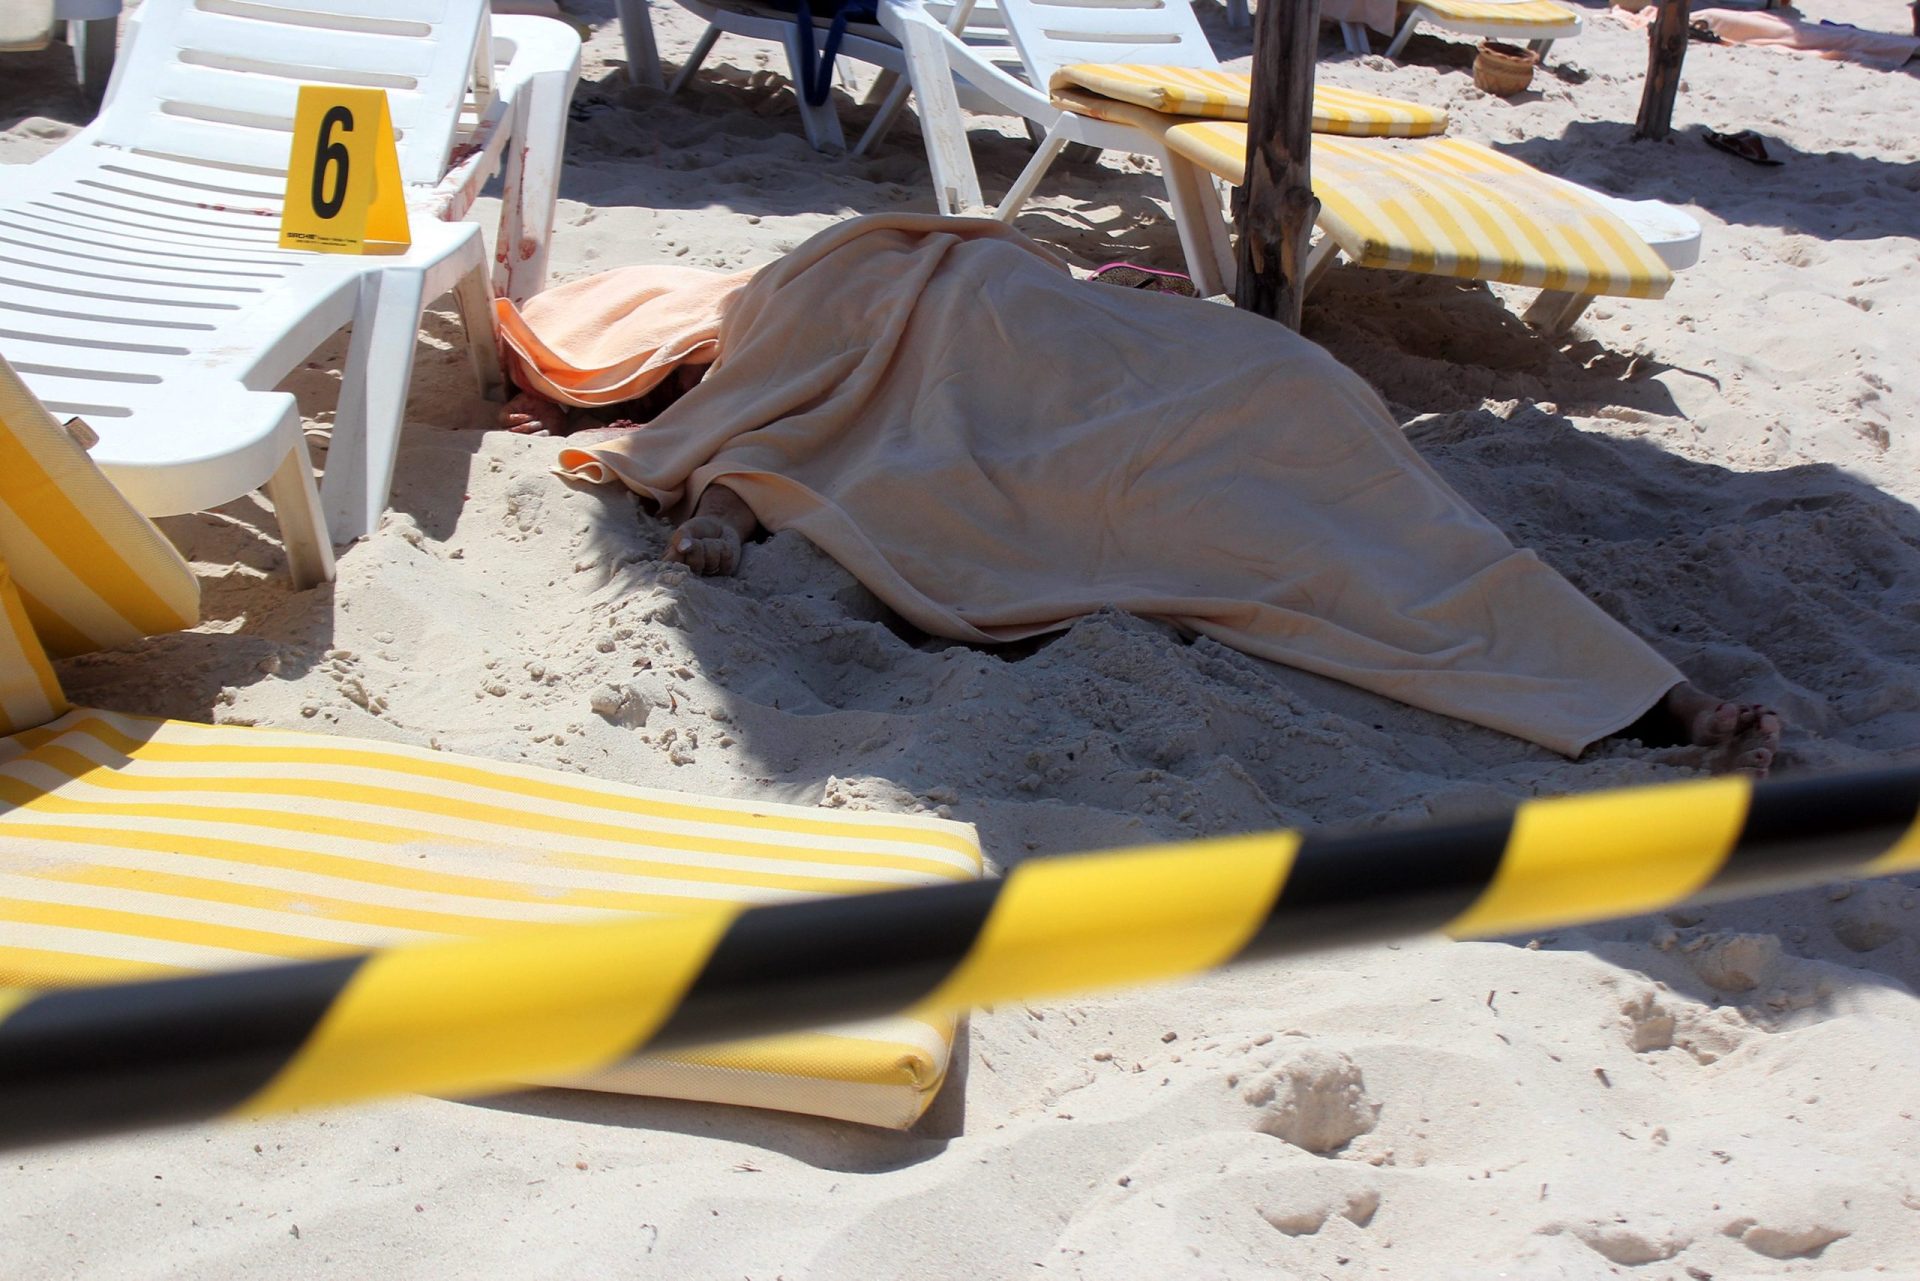 Tunísia. Ataque em zona turística faz pelo menos 37 mortos